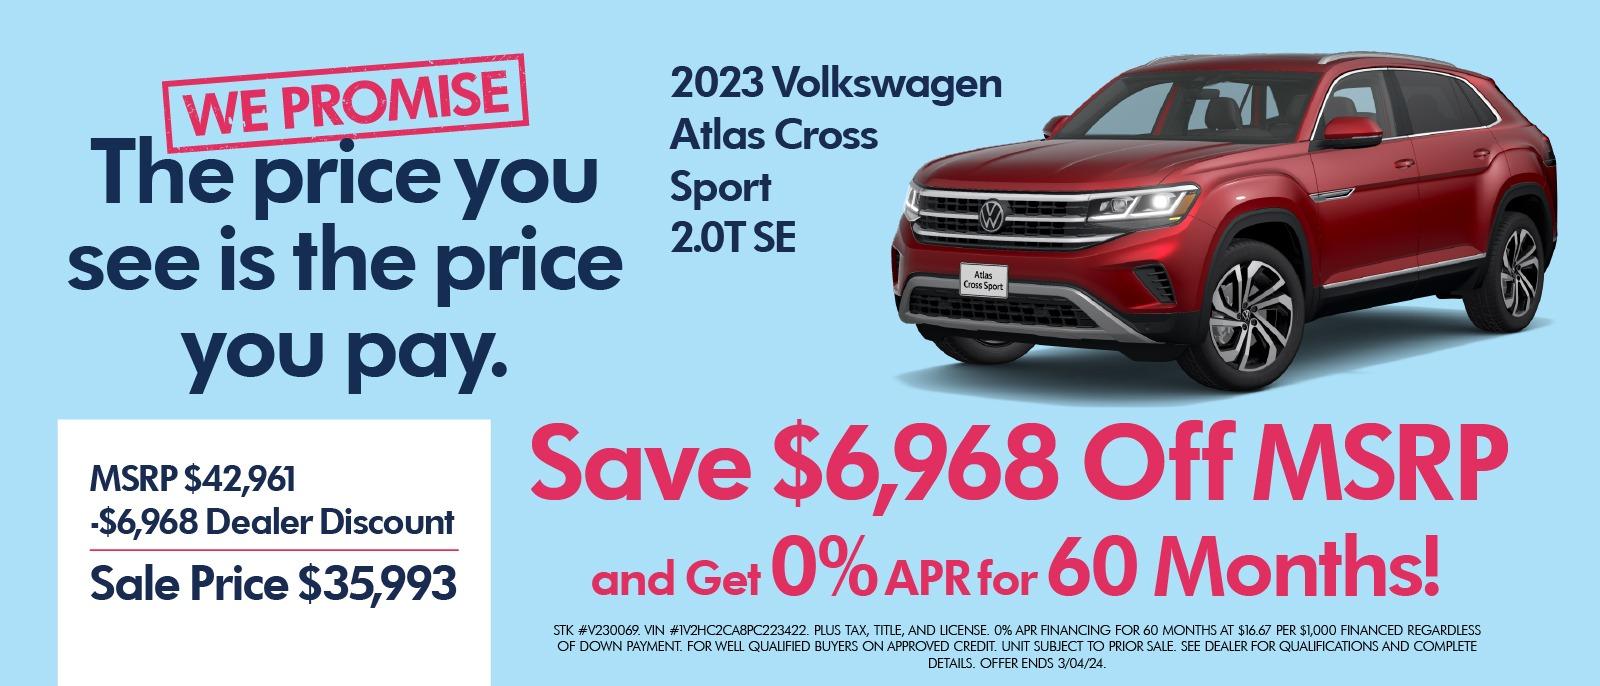 2023 VW Atlas Cross Sport Special!